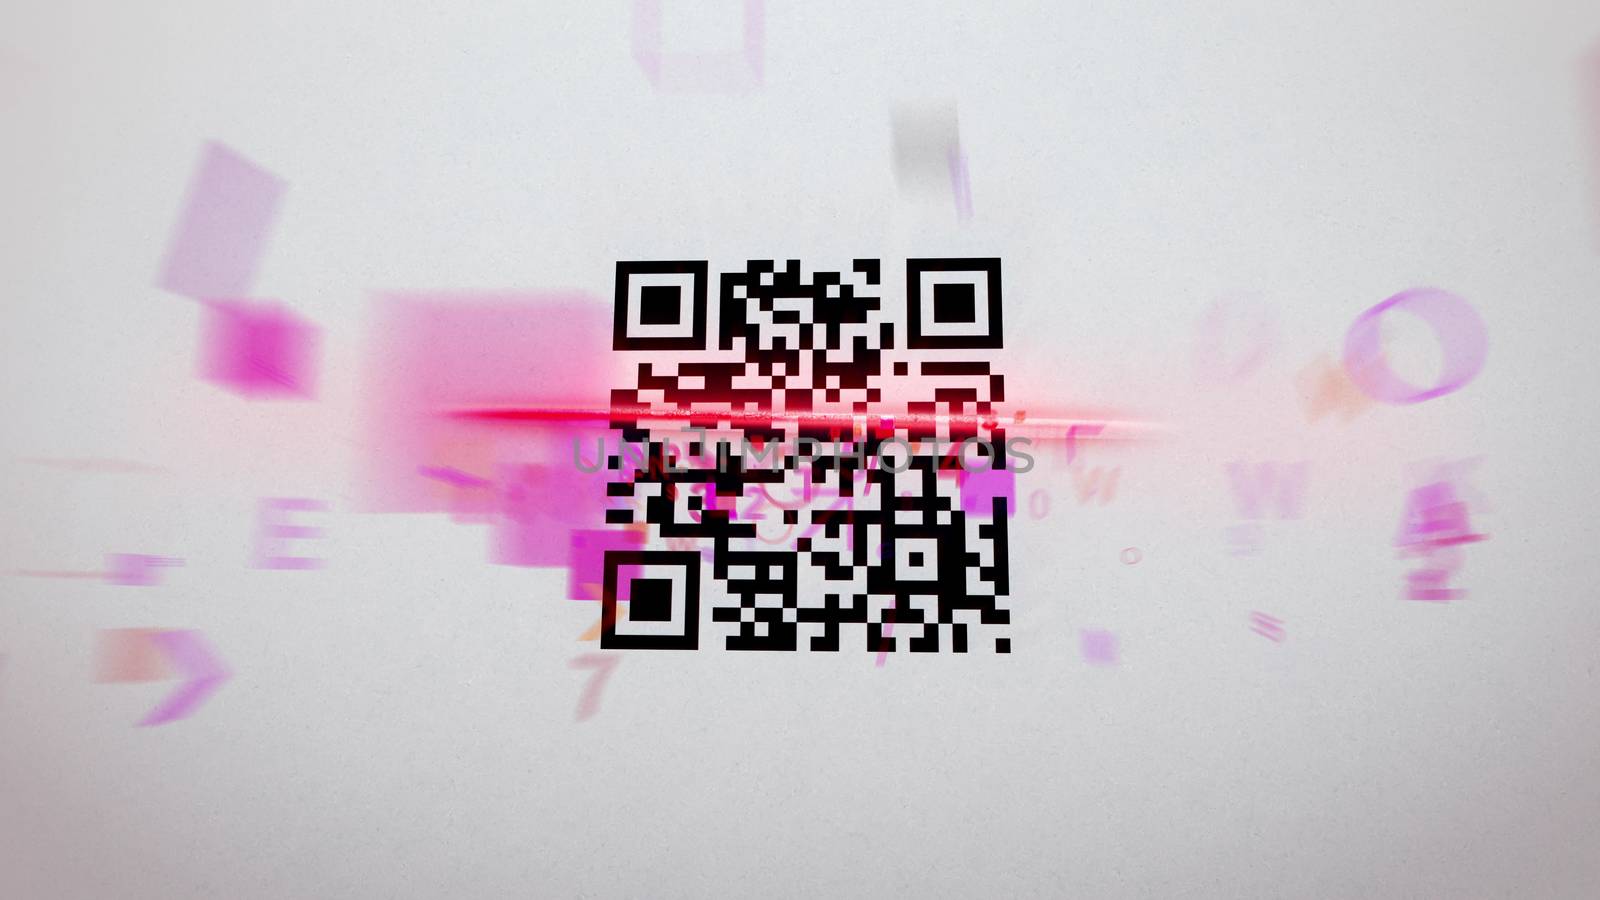 Blurred QR code scanner illustration by klss